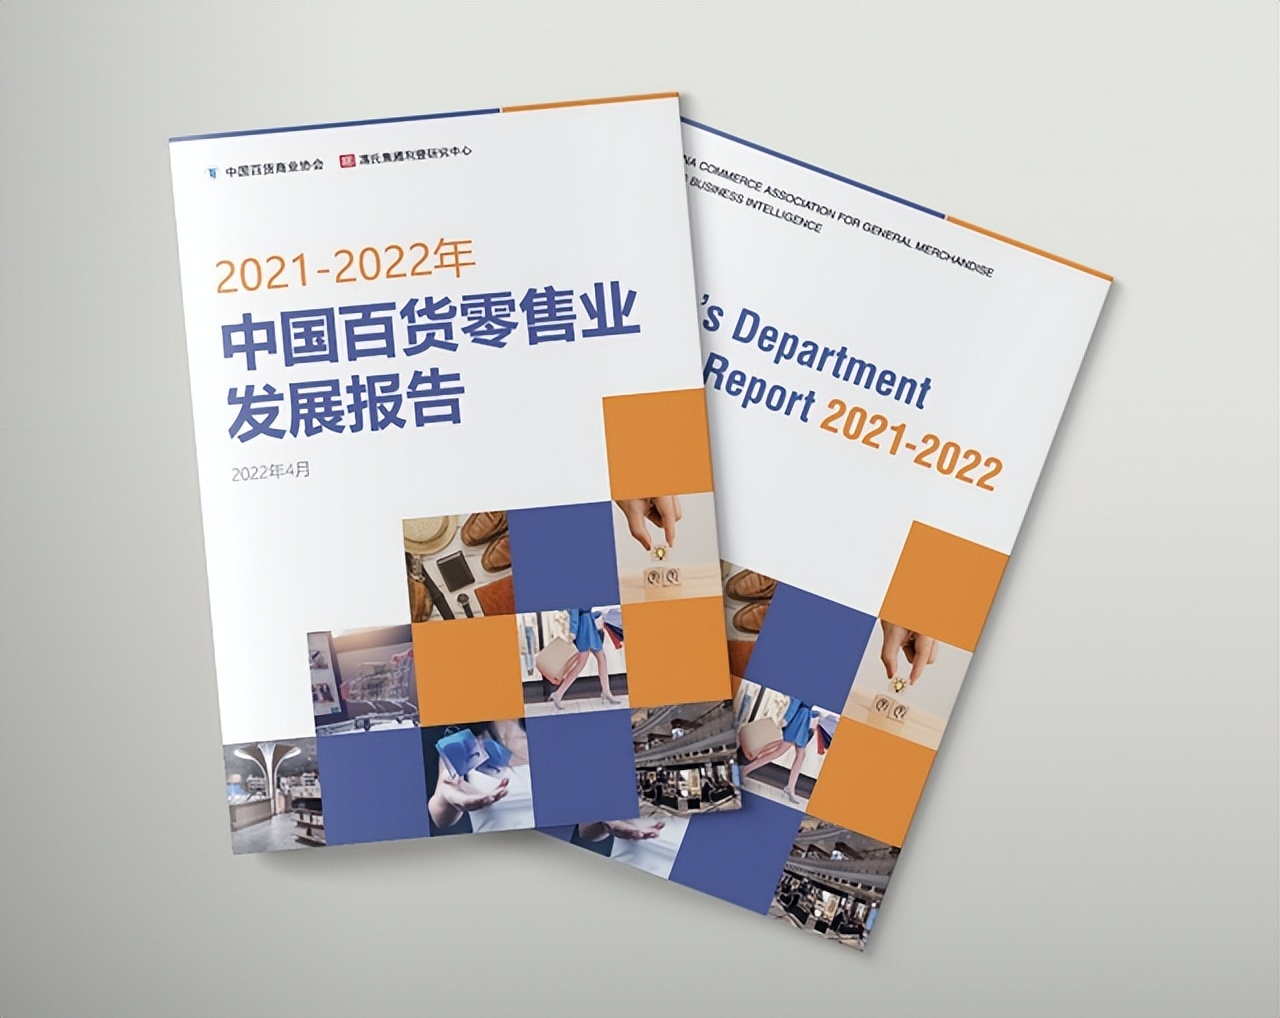 《2021-2022中国百货零售业发展报告》发布